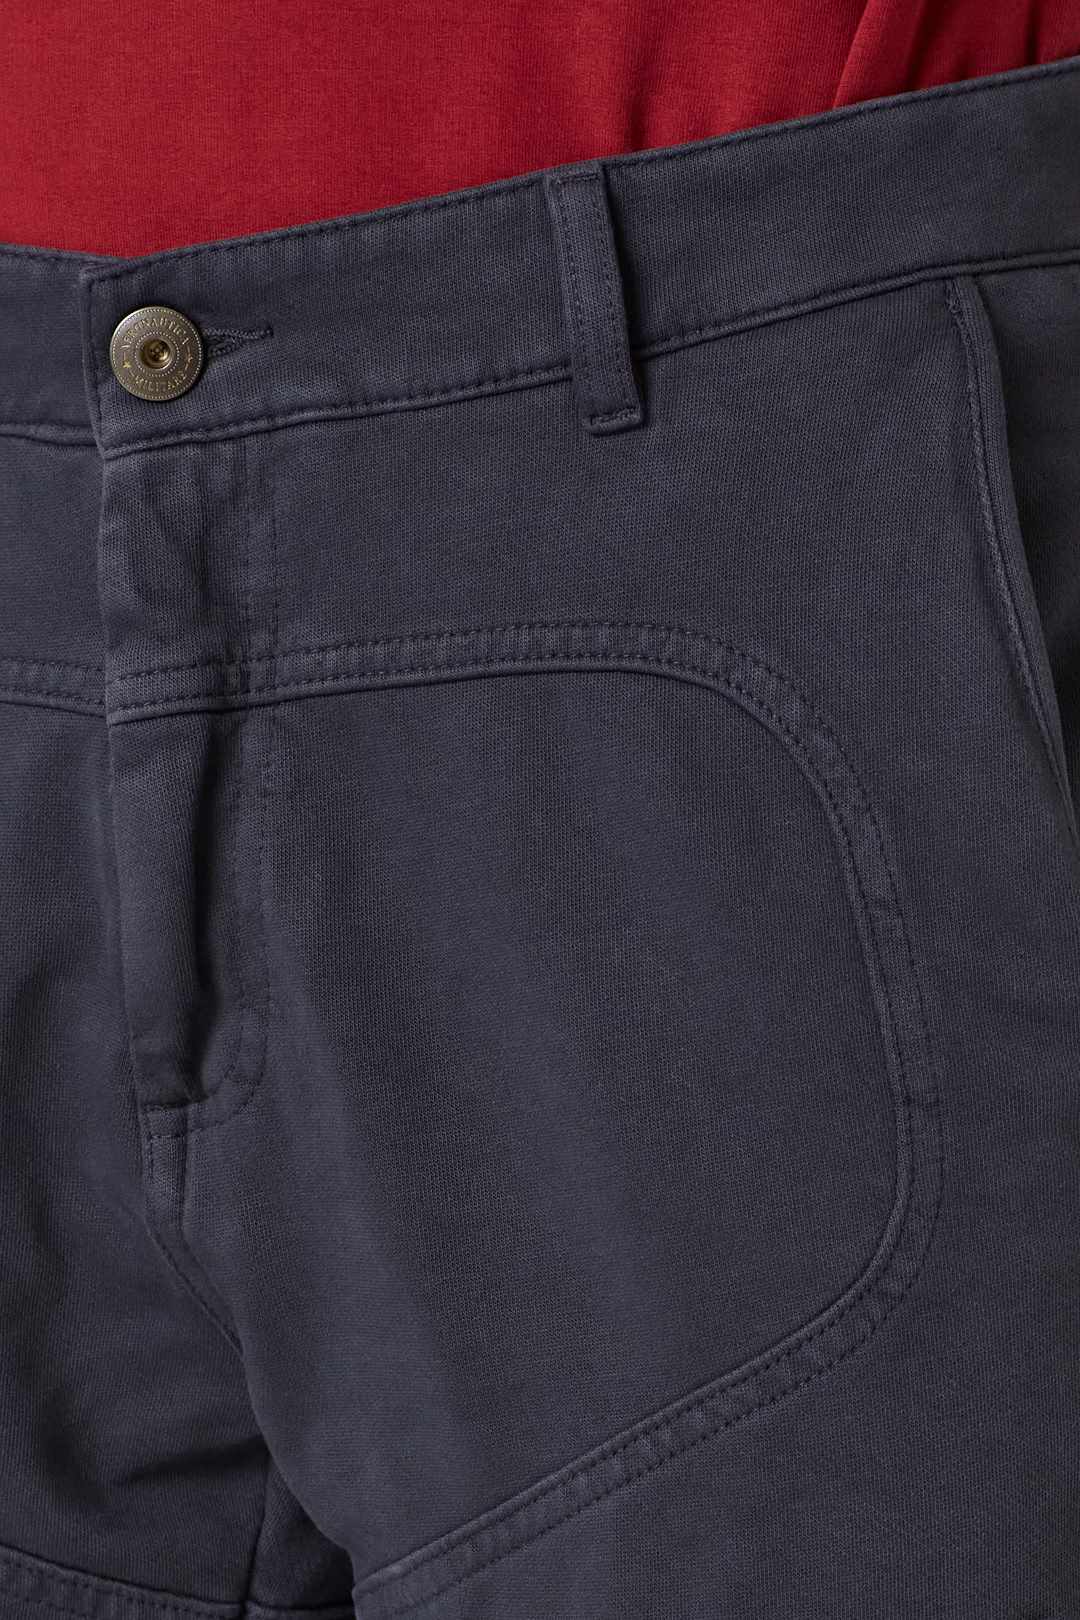 detail Kalhoty pantalone 222PF743J505